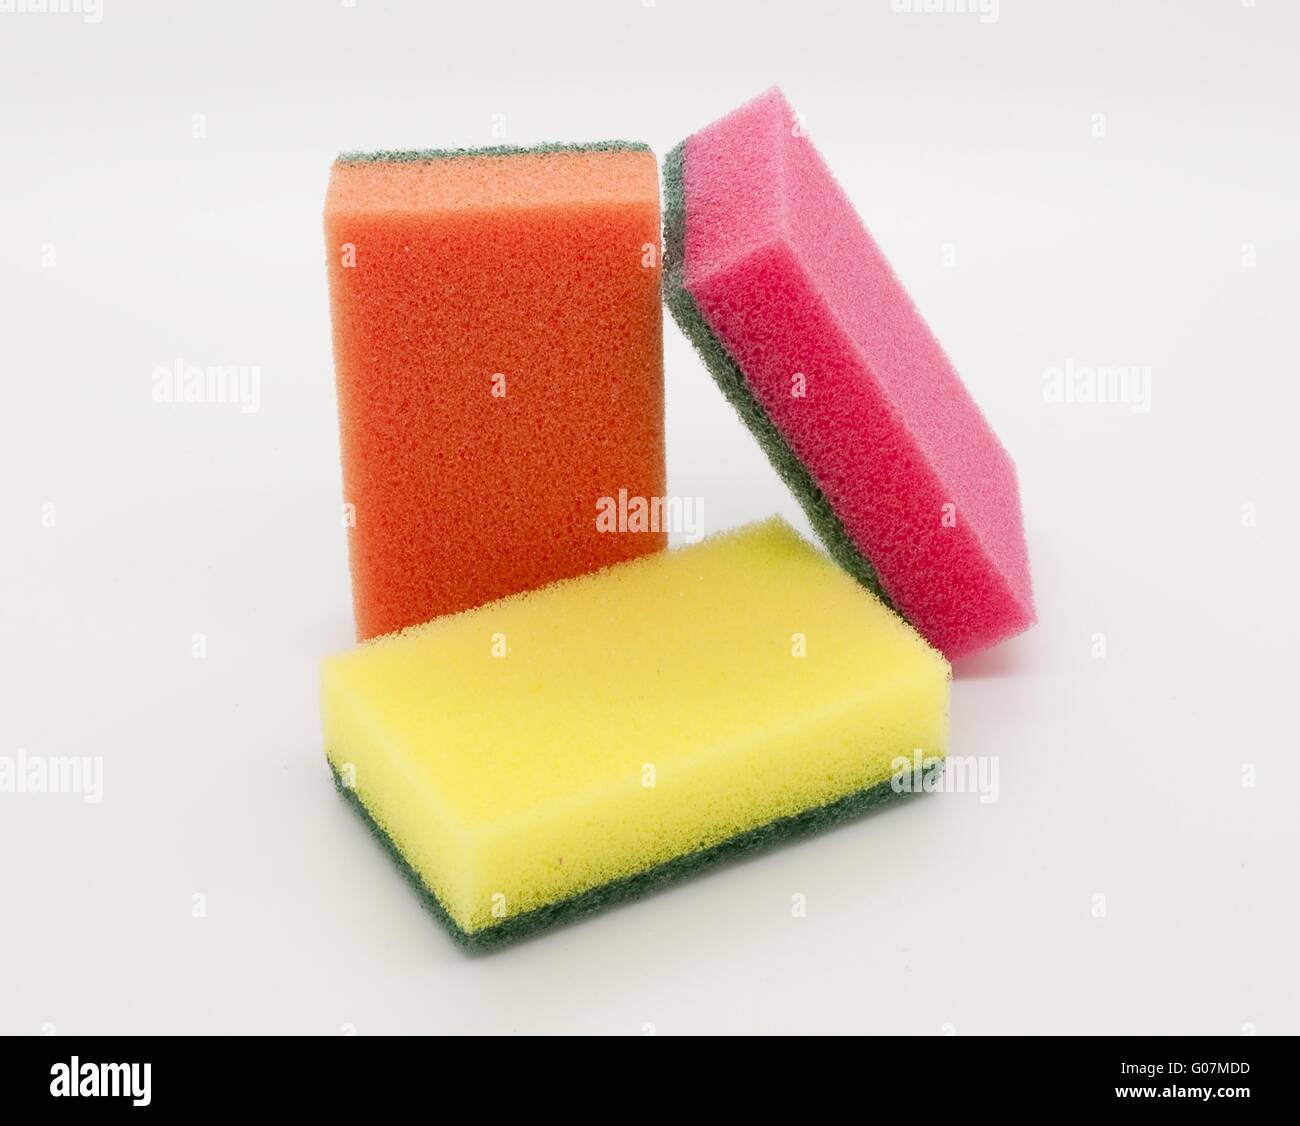 Colour sponges Stock Photo